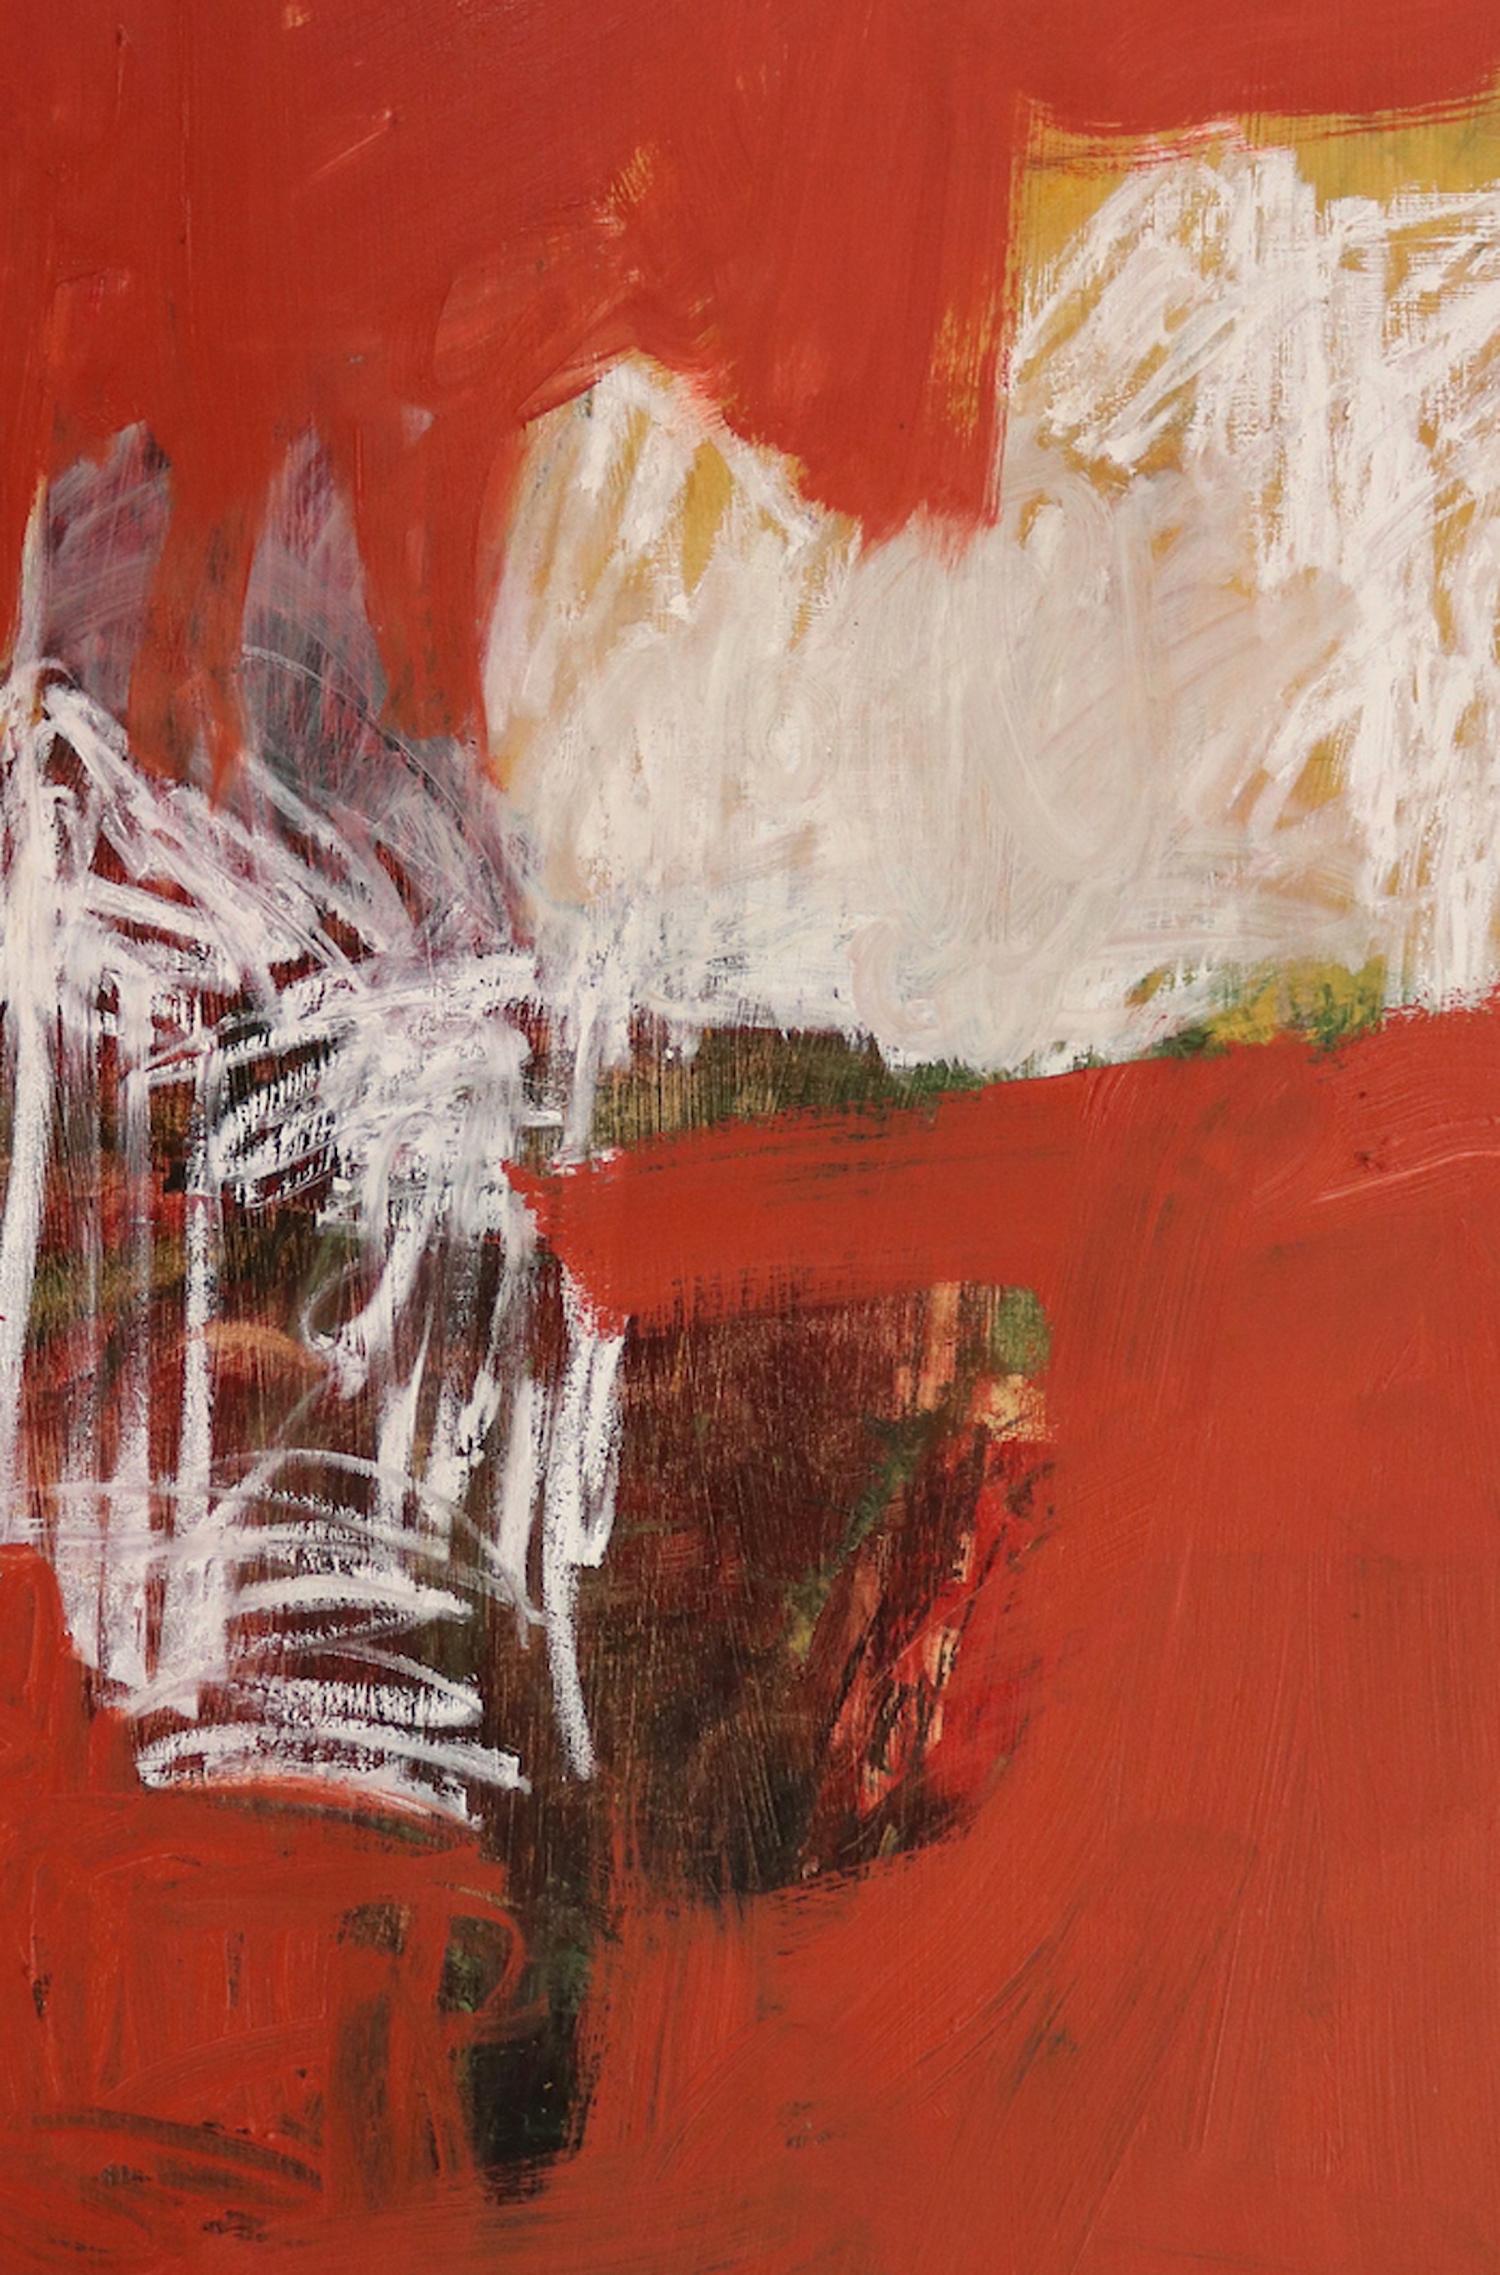 « Point of Departure 3 », abstrait, audacieux, orange, rouges, verts, techniques mixtes - Contemporain Mixed Media Art par Leslie Zelamsky